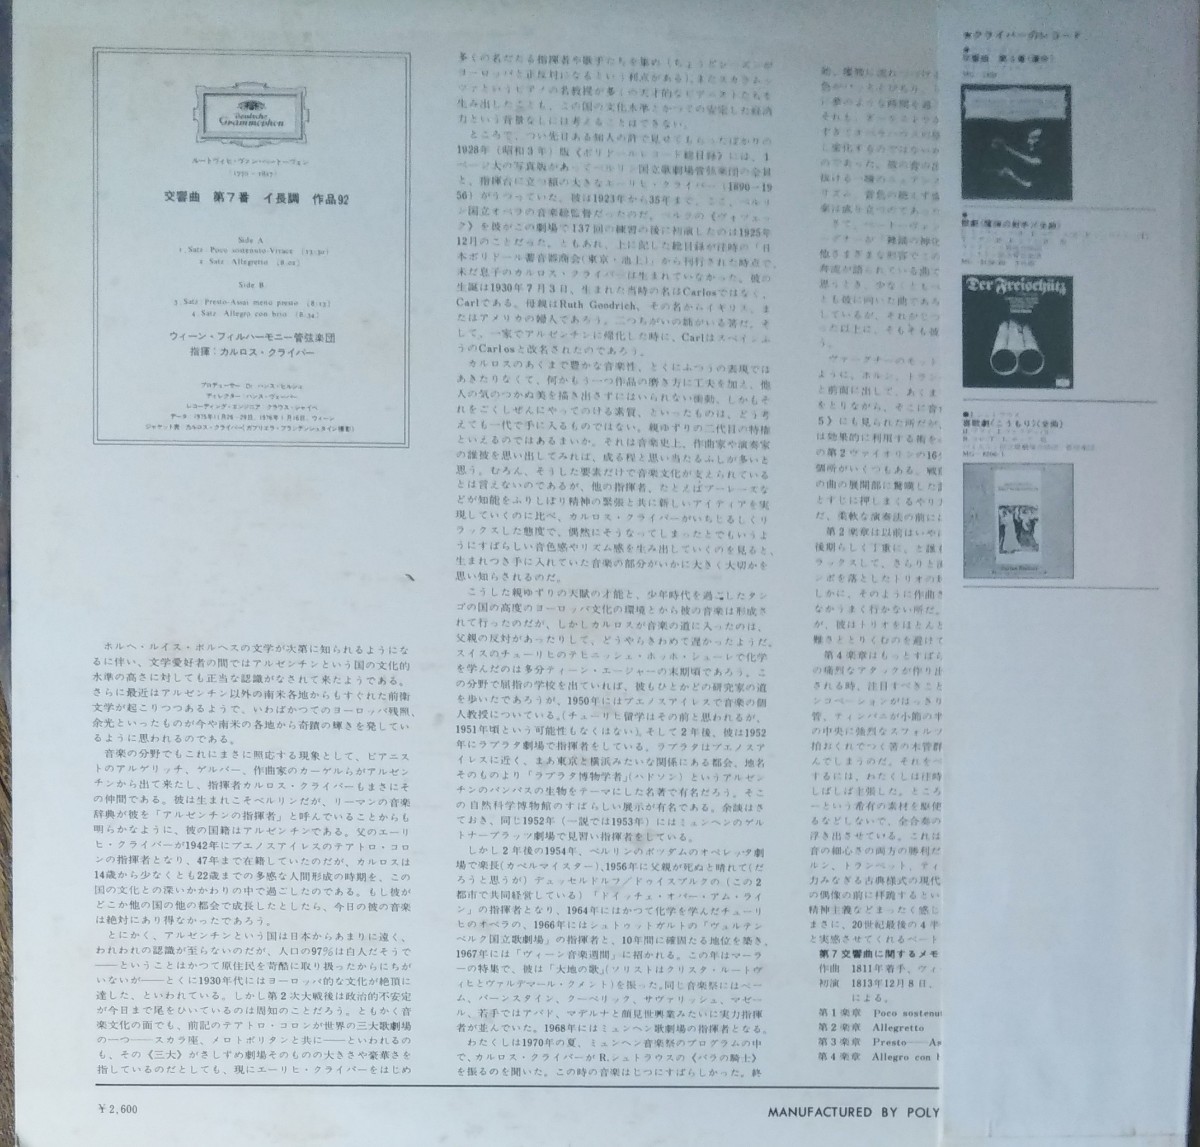 ベートーヴェン 交響曲7番 C.クライバー 国内盤 ウィーンフィル BEETHOVEN SYM.7 C.KLEIBER VIENA PHILHARMONIC ORCHESTRA 19756 LPの画像2